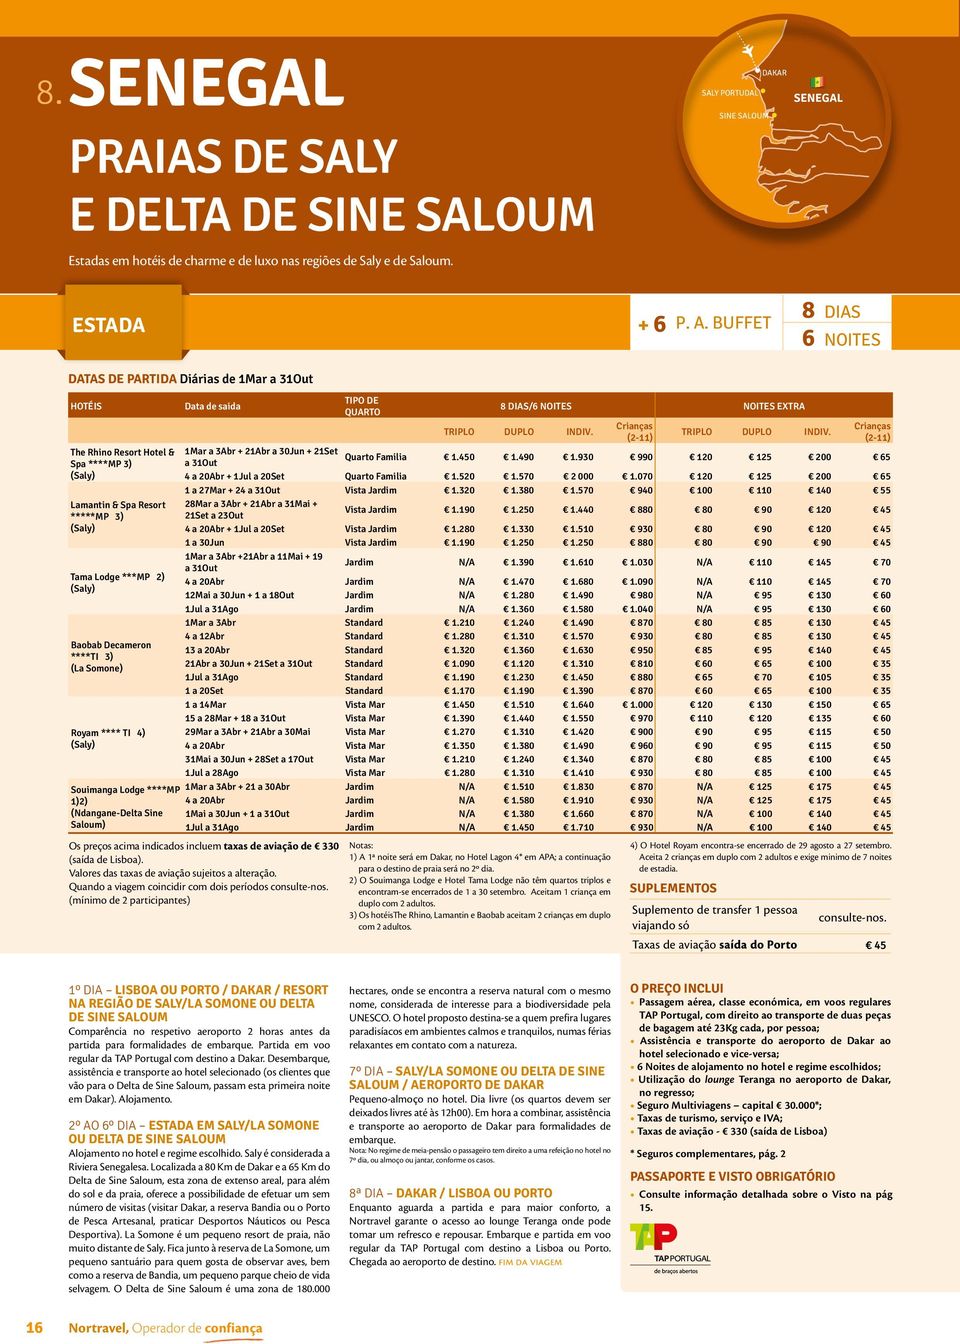 Somone) Royam **** TI 4) (Saly) Souimanga Lodge ****MP 1)2) (Ndangane-Delta Sine Saloum) Data de saida Os preços acima indicados incluem taxas de aviação de 330 (saída de Lisboa).